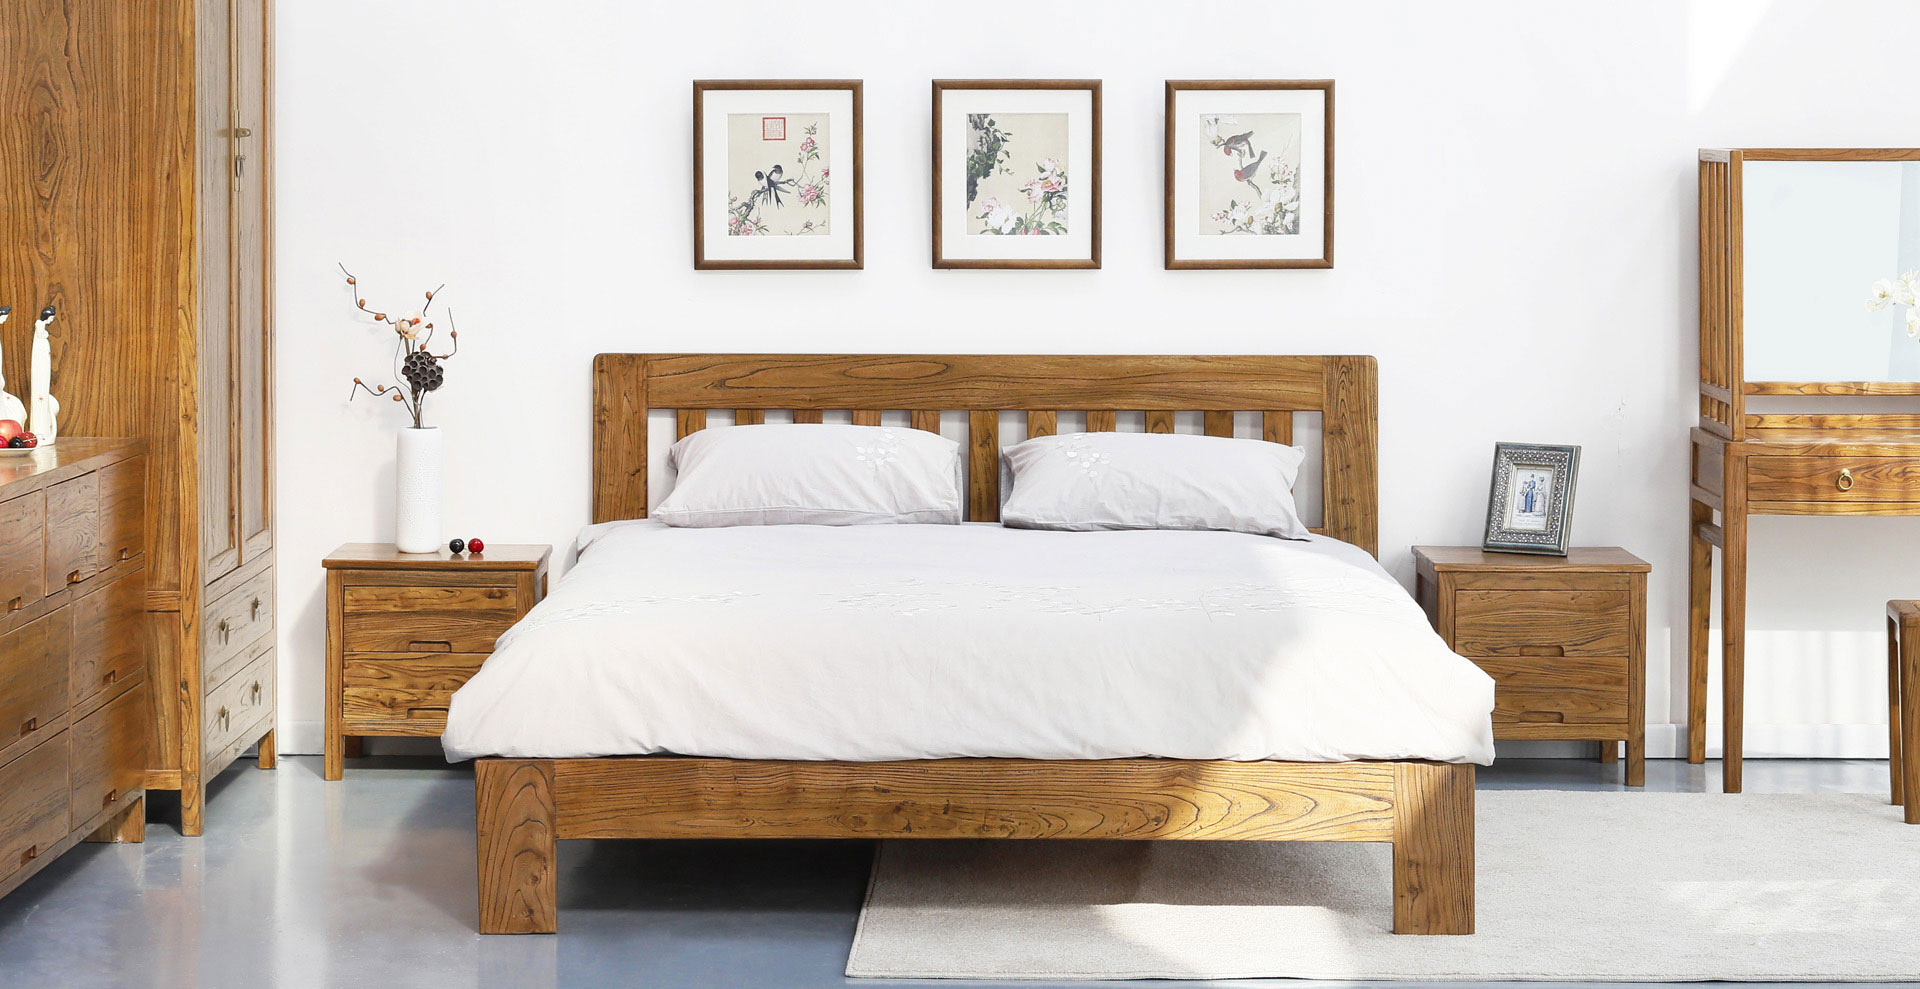 老榆木双人床 卧室家具 新中式 全屋定制 装修 古朴年代 实木家具